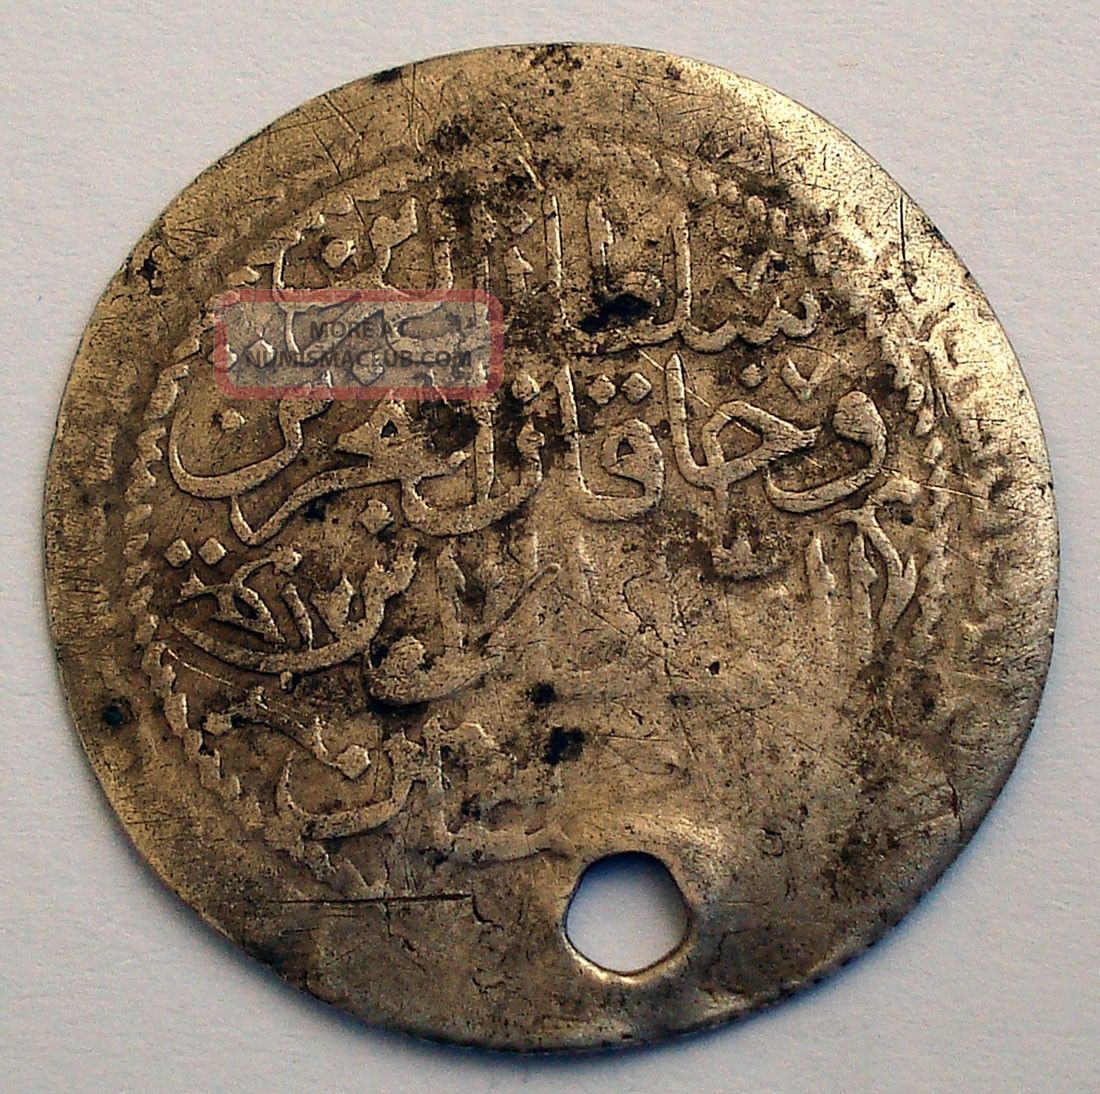 Ottoman Empire 30 Para (zolota) Ah1223/17 Silver Islamic Coin ...